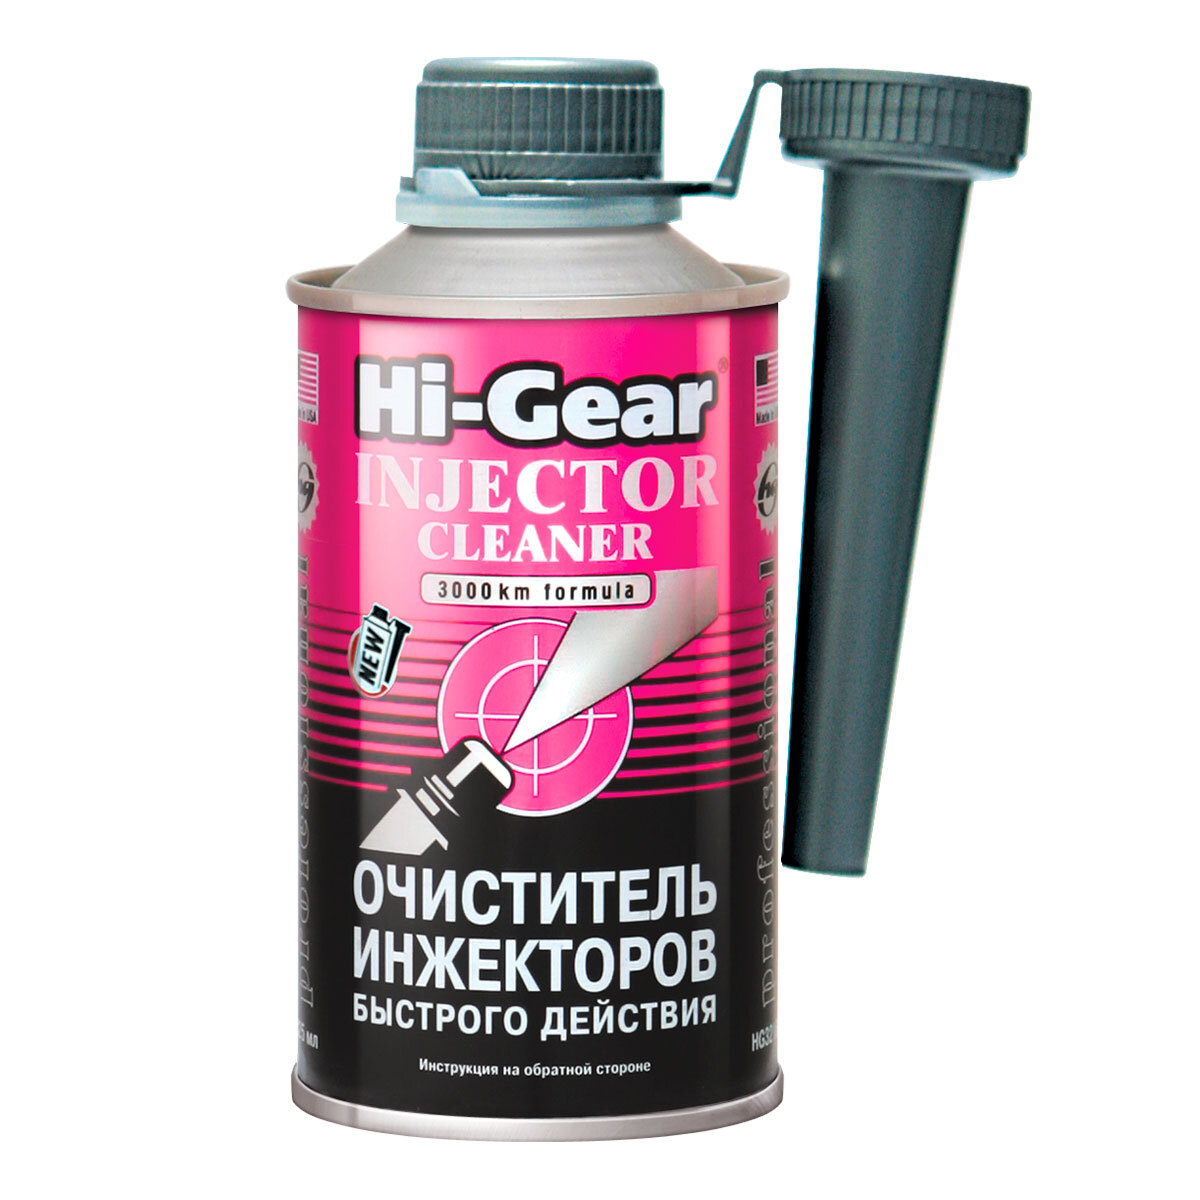 Присадки для очистки инжектора. Hi-Gear hg3216. Очиститель инжекторов hg3216. Hi-Gear hg3218 очиститель форсунок. Очиститель Hi-Gear hg3247.